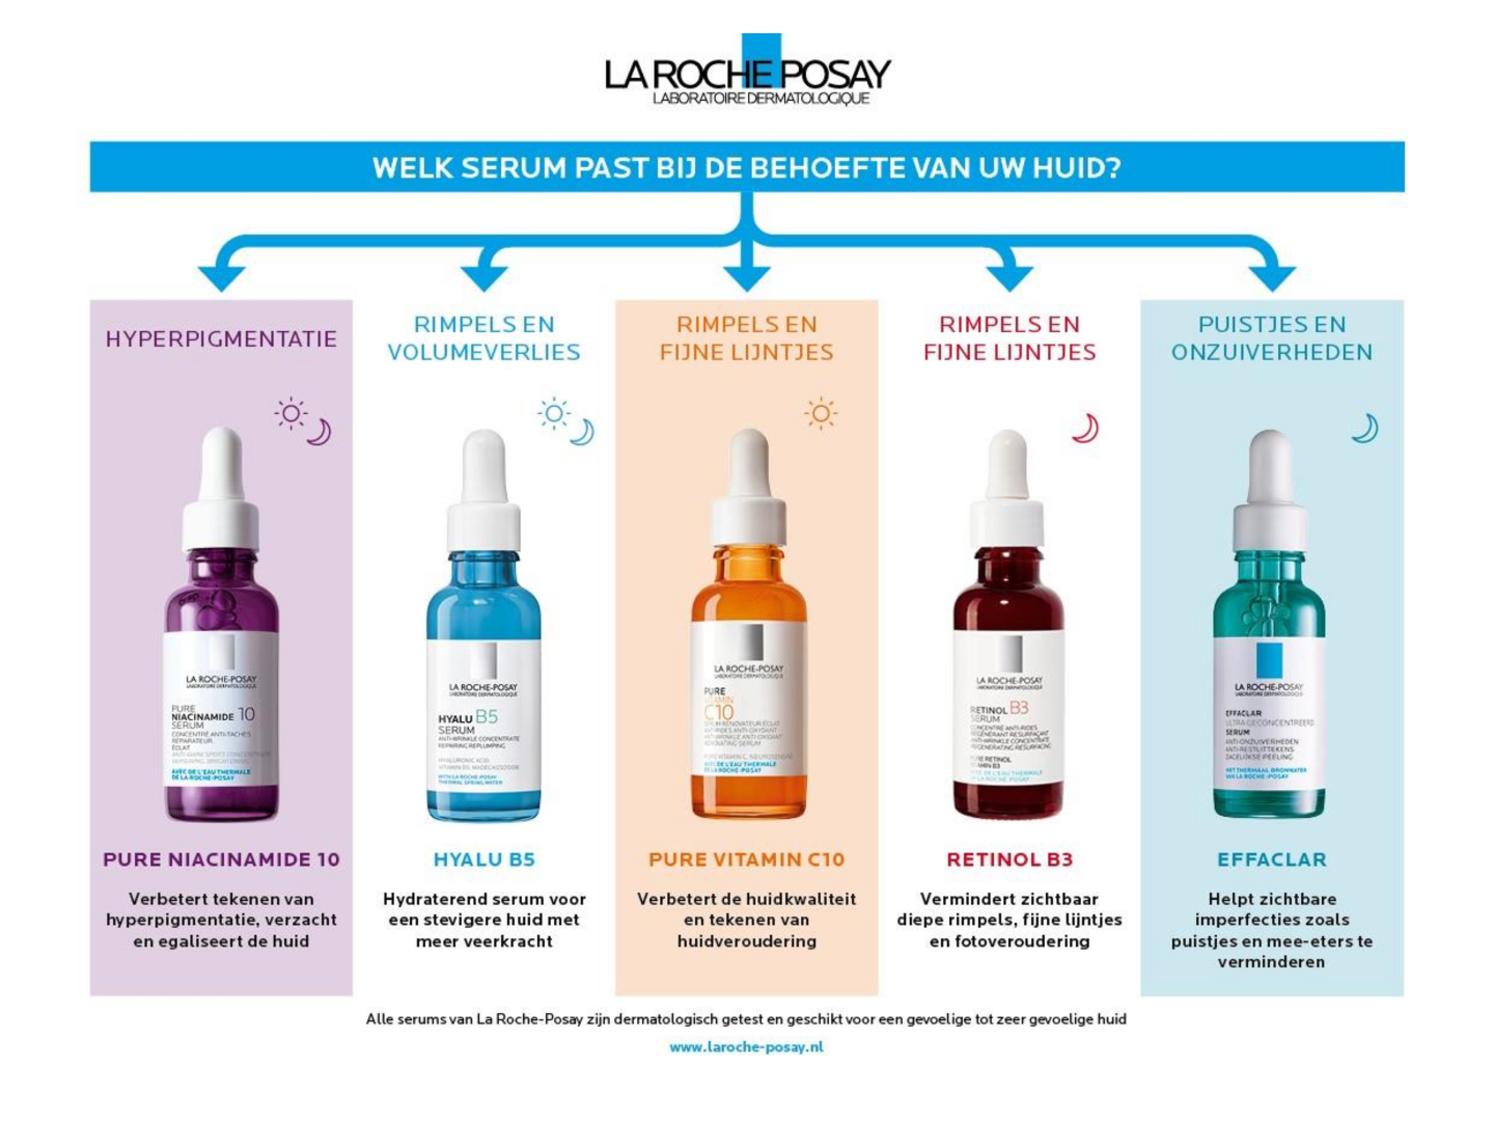 Pure Niacinamide 10 serum - helpt pigmentvlekken verminderen afbeelding van document #1, gebruiksaanwijzing